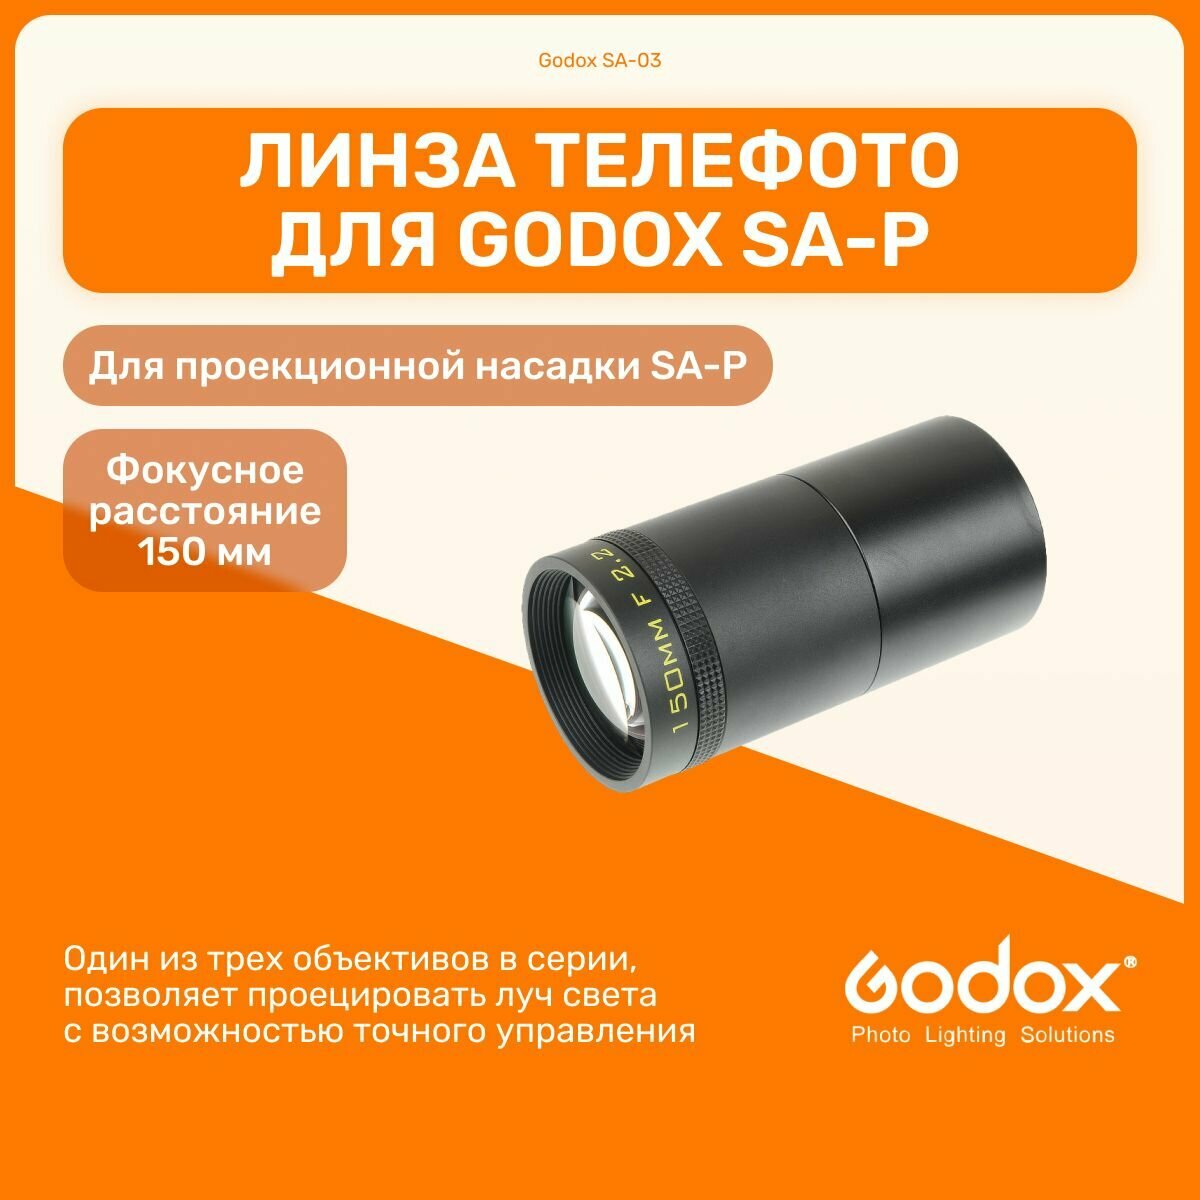 Линза телефото Godox SA-03 150 мм для проекционной насадки SA-P, студийный свет для фото и видео съемок, видеосвет